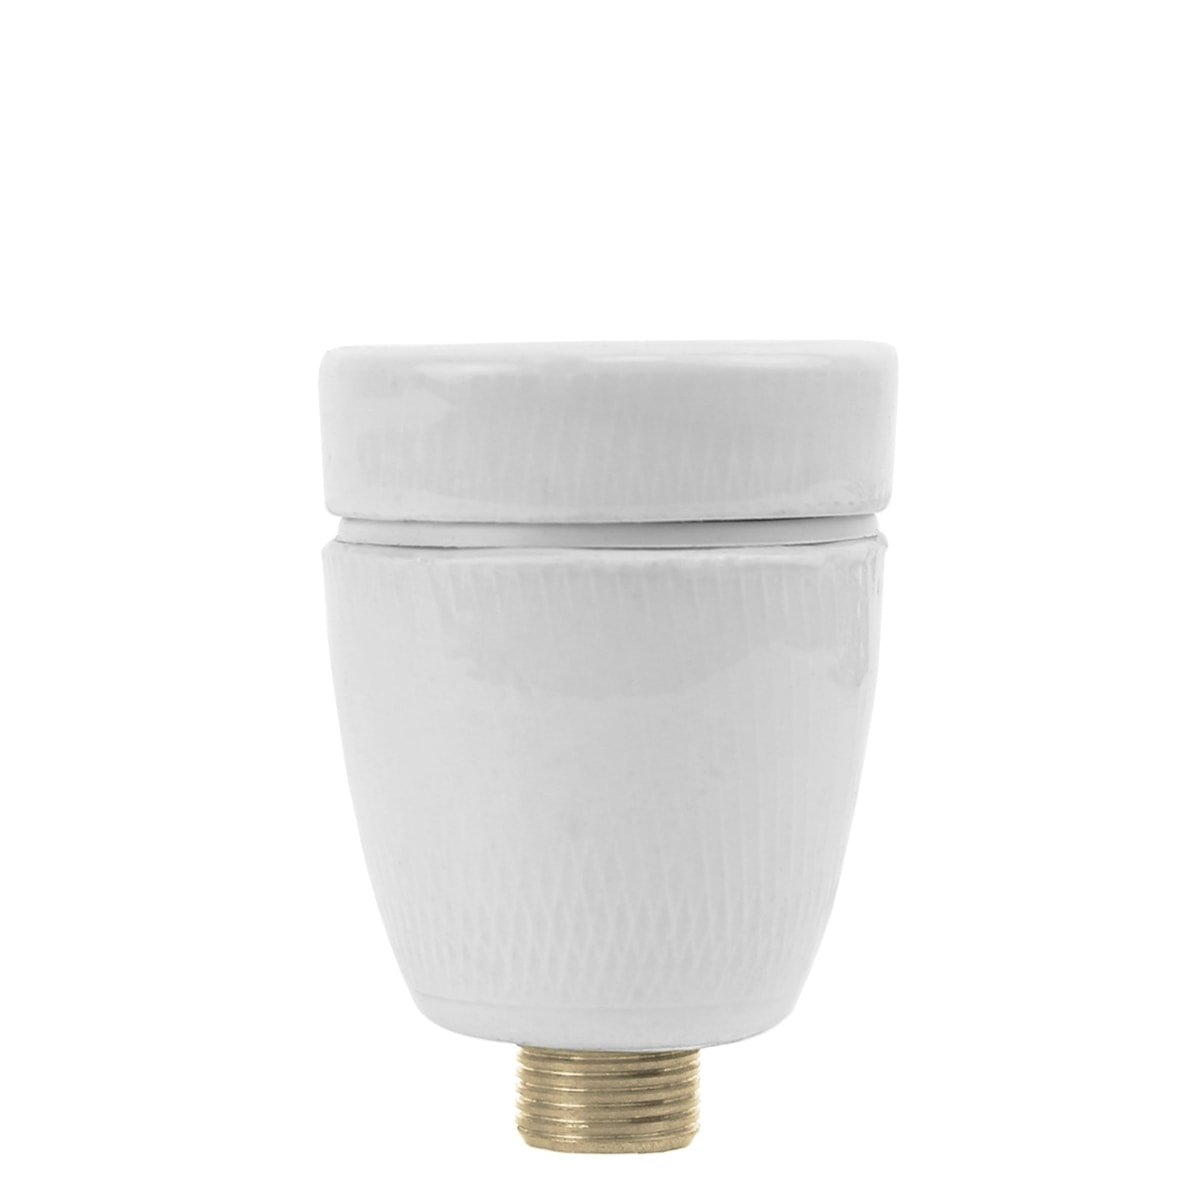 Douille lampe en porcelaine E27 3/8 - Ø 15,8 mm